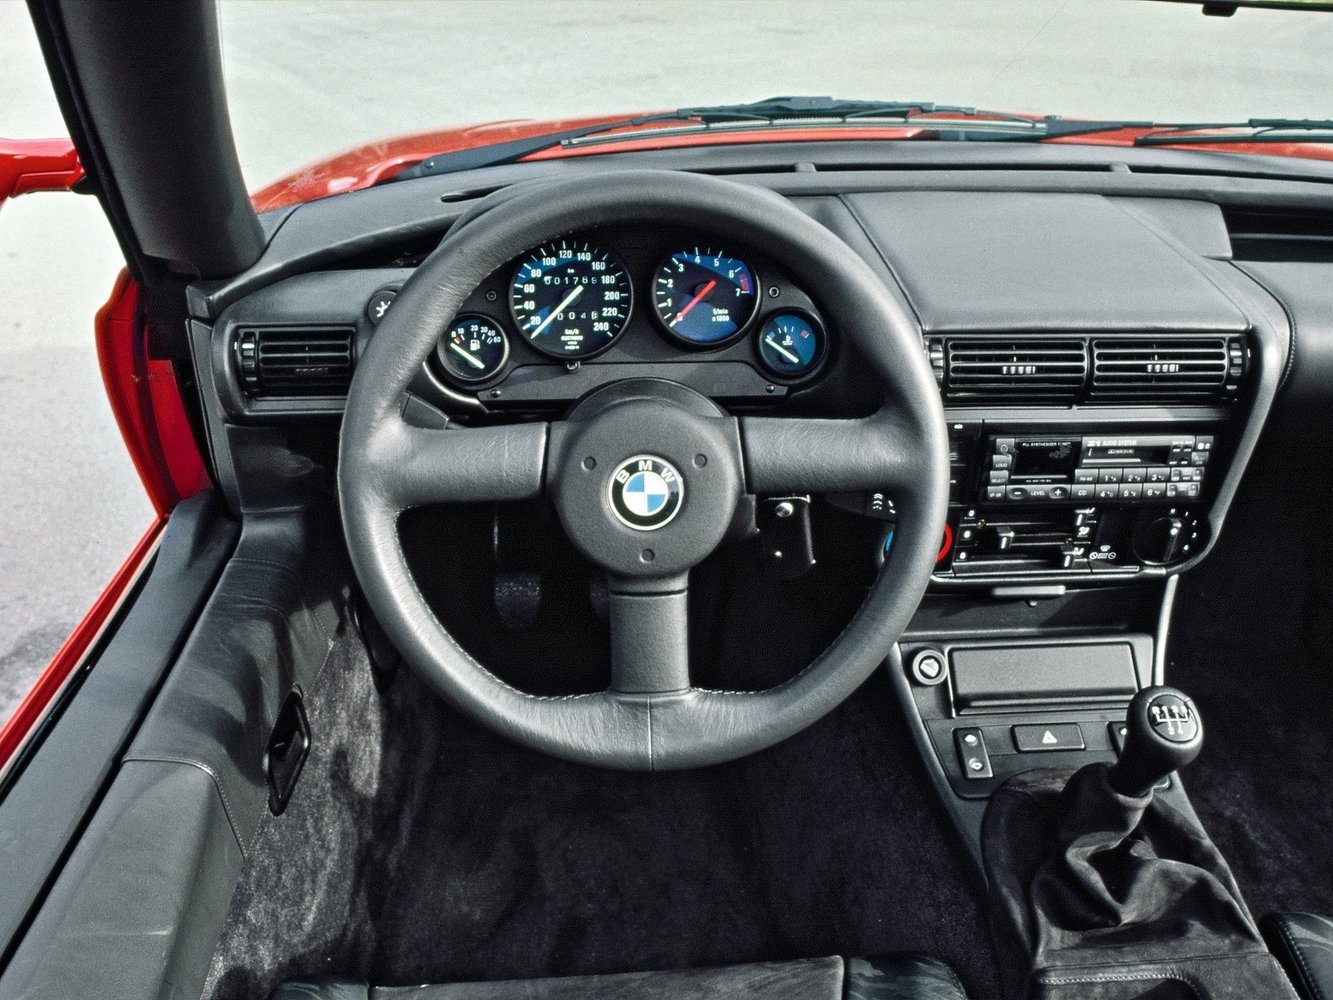 кабриолет BMW Z1 1989 - 1991г выпуска модификация 2.5 MT (170 л.с.)